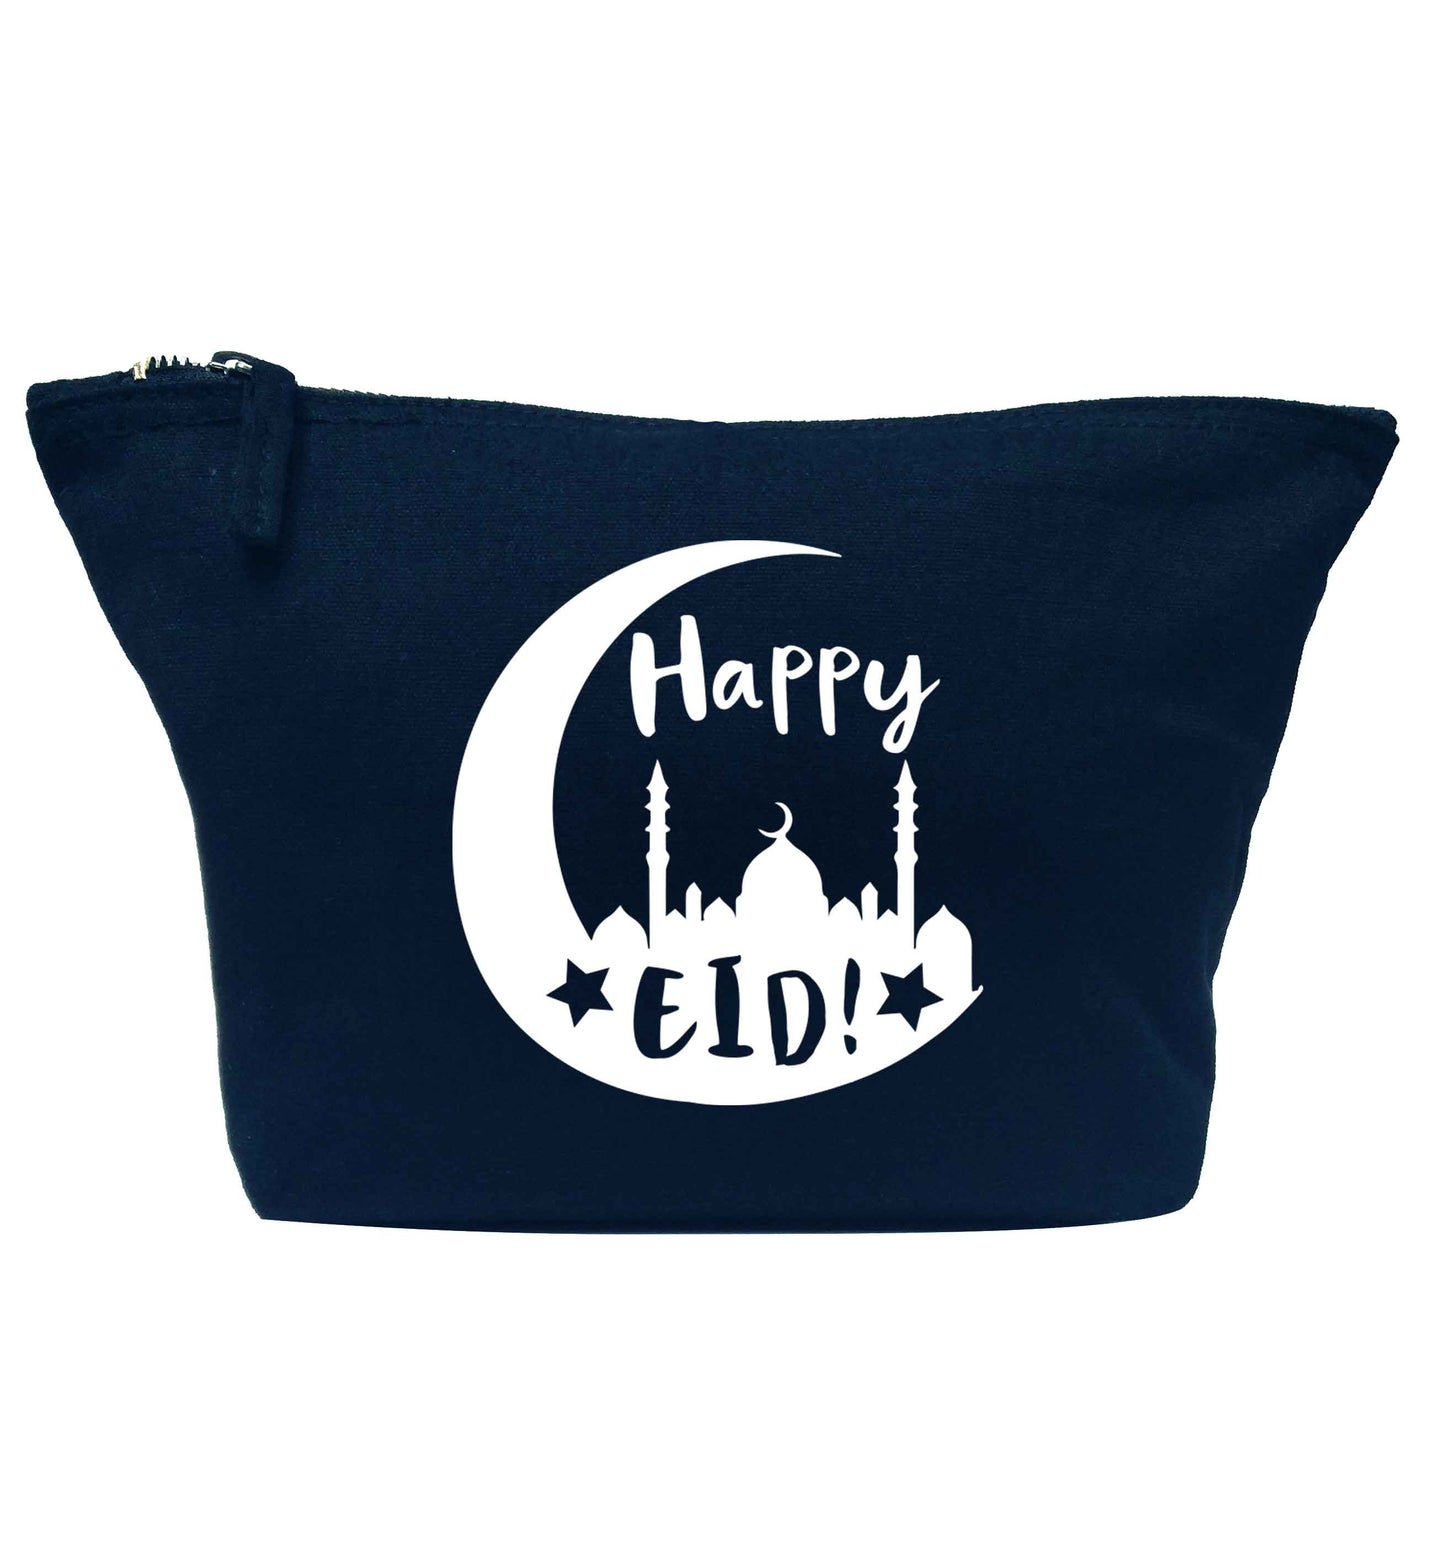 Happy Eid navy makeup bag